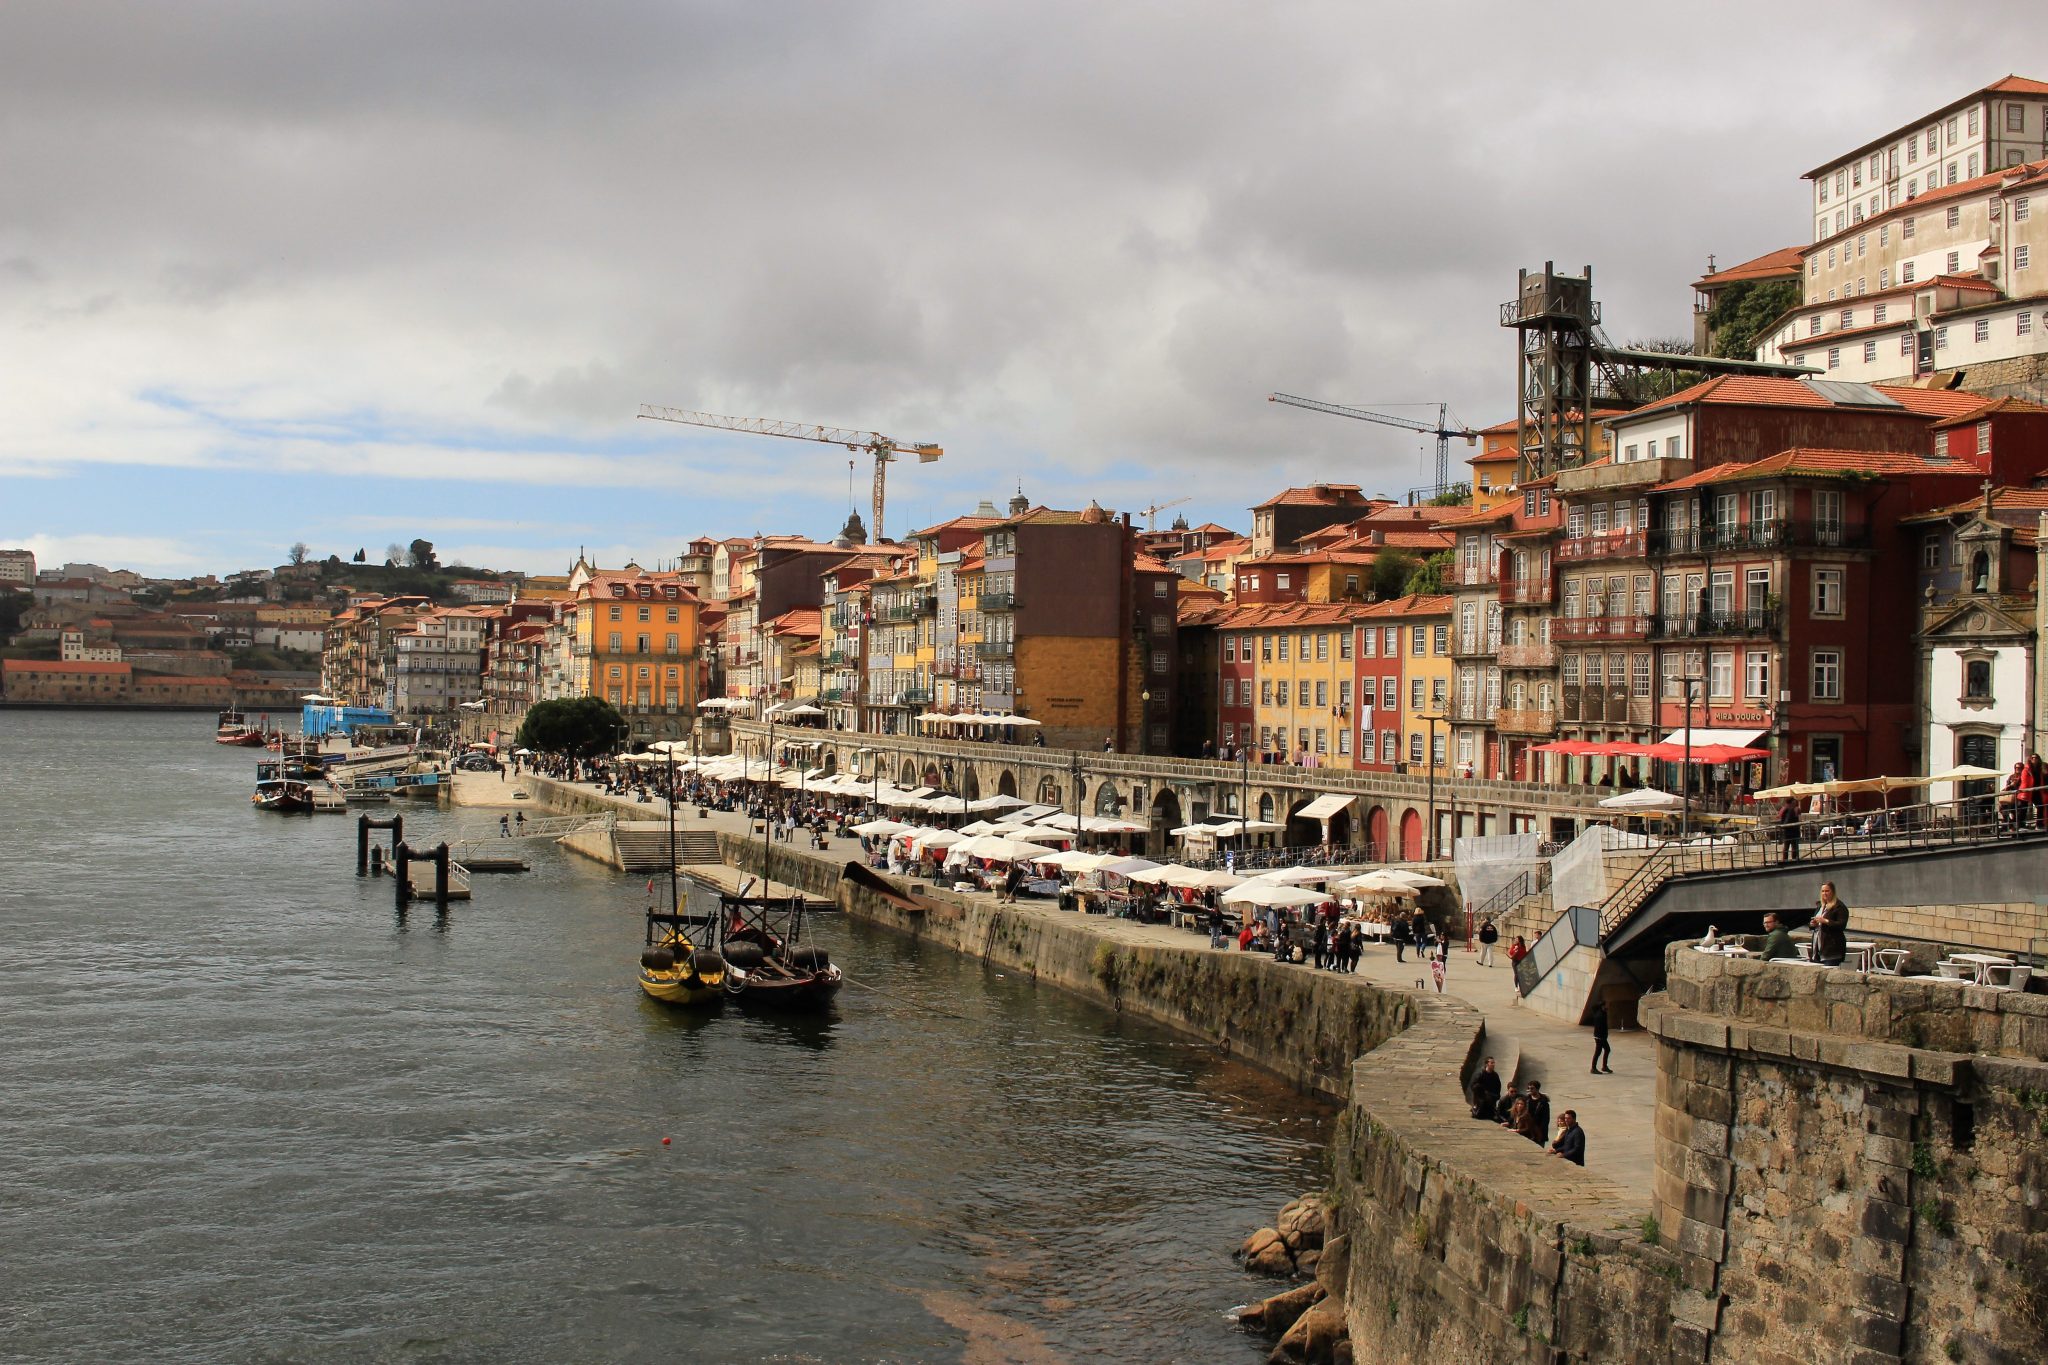 Näe ainakin nämä Portossa!